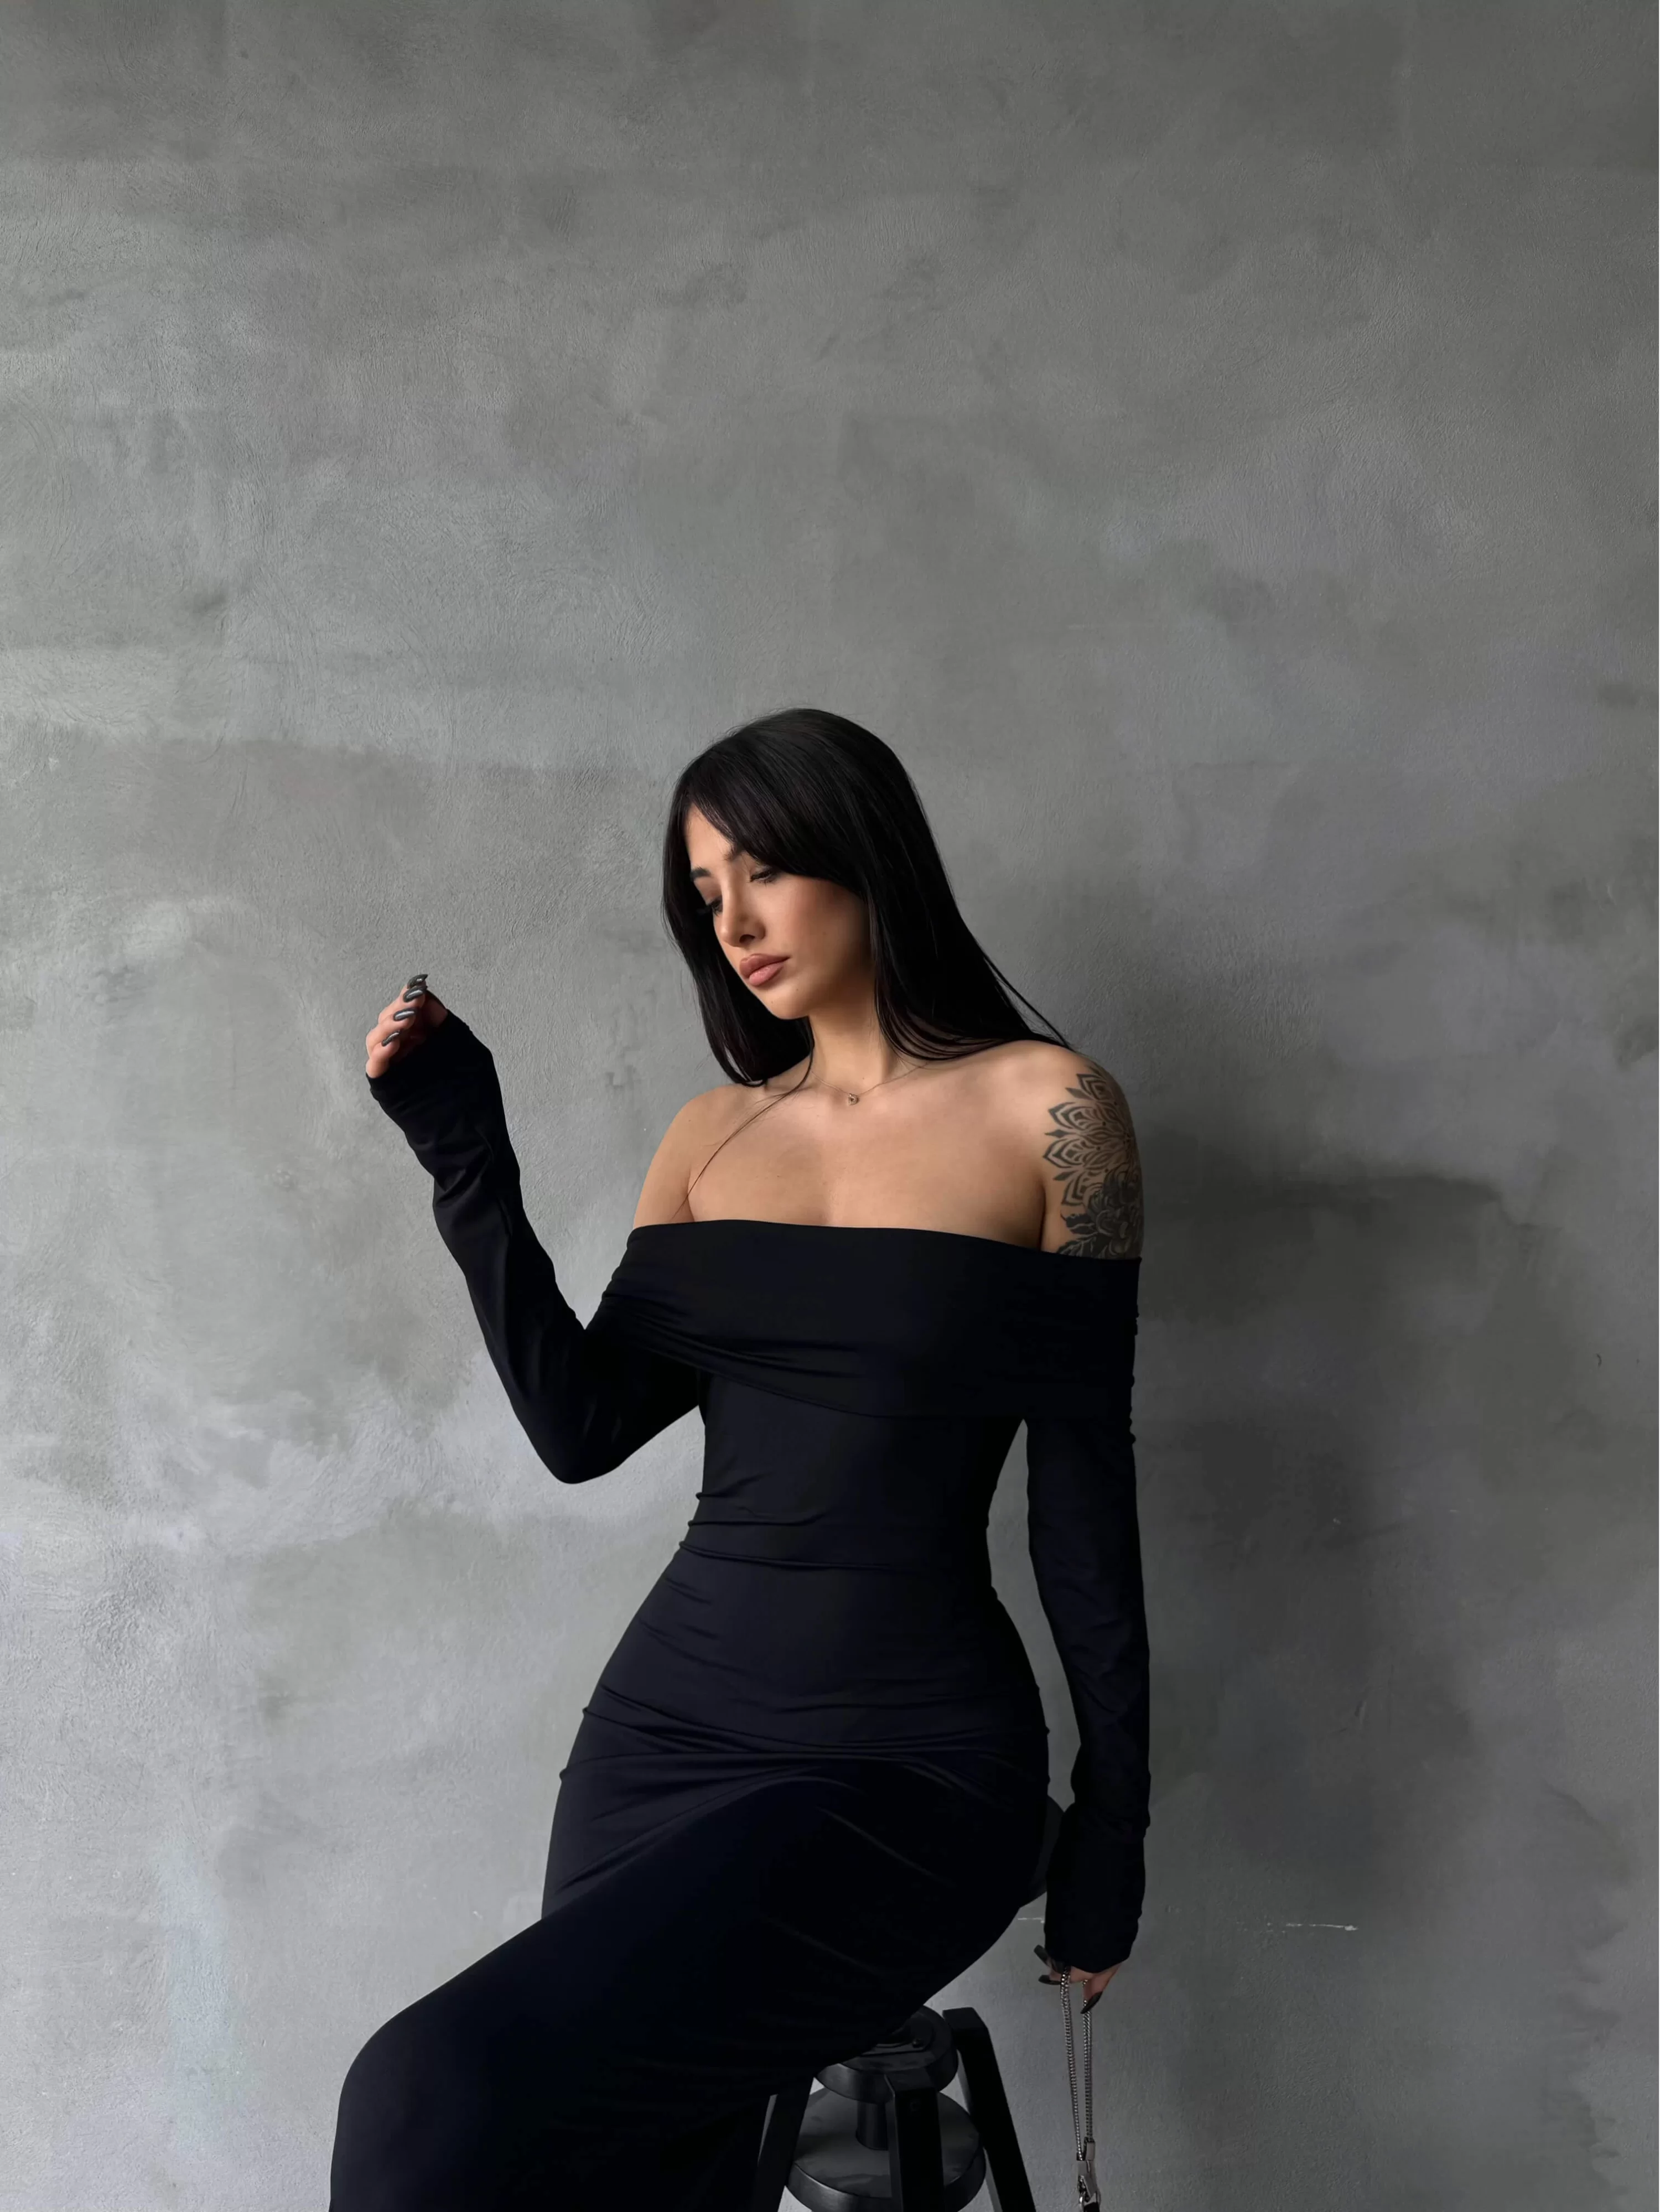 Kadın Siyah Degaje Yaka Uzun Elbise 1017-2407